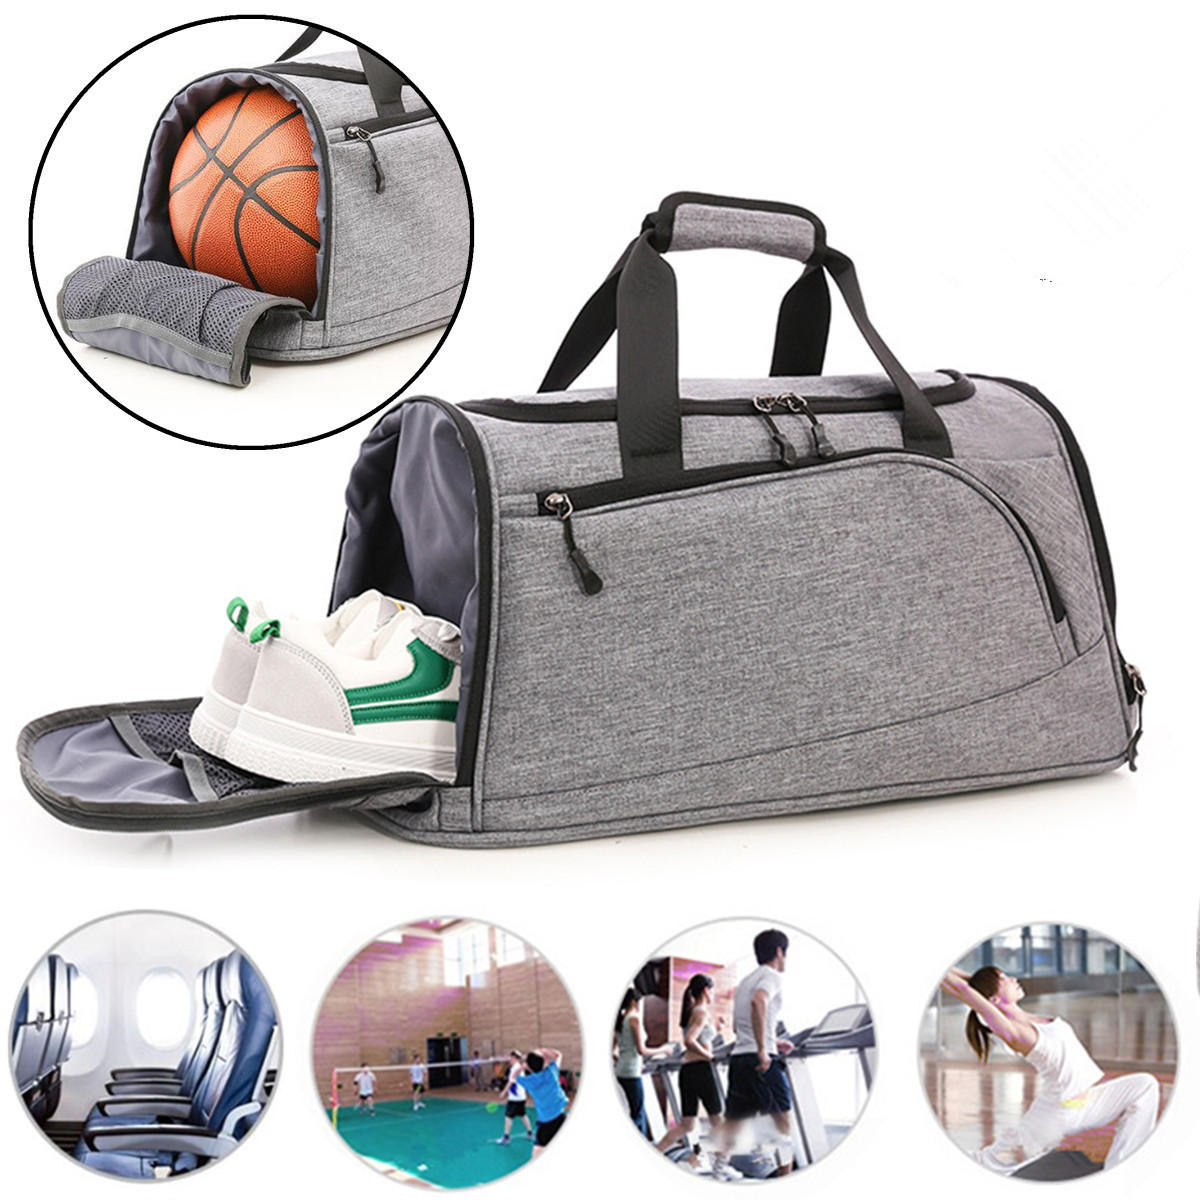 Spor ve seyahat için su geçirmez 40L spor seyahat sırt çantası duffel sırt çantası basketbol çantası erkekler kadınlar.